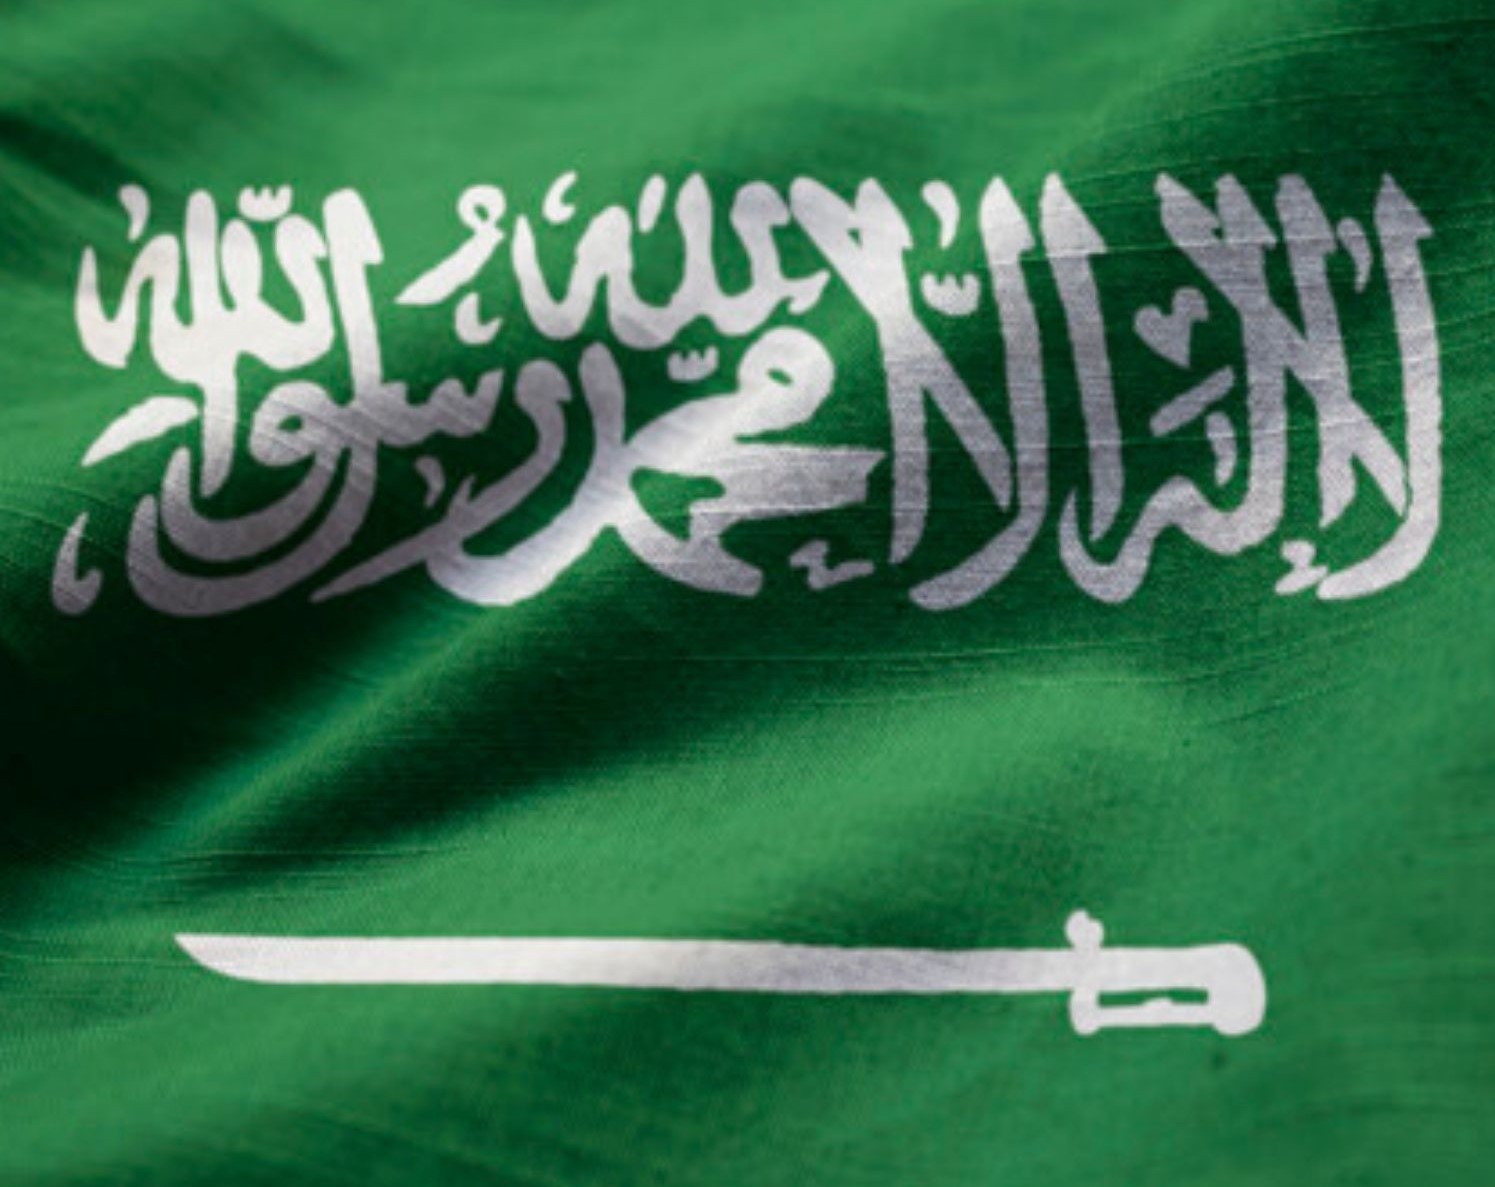 صور علم المملكة العربية السعودية